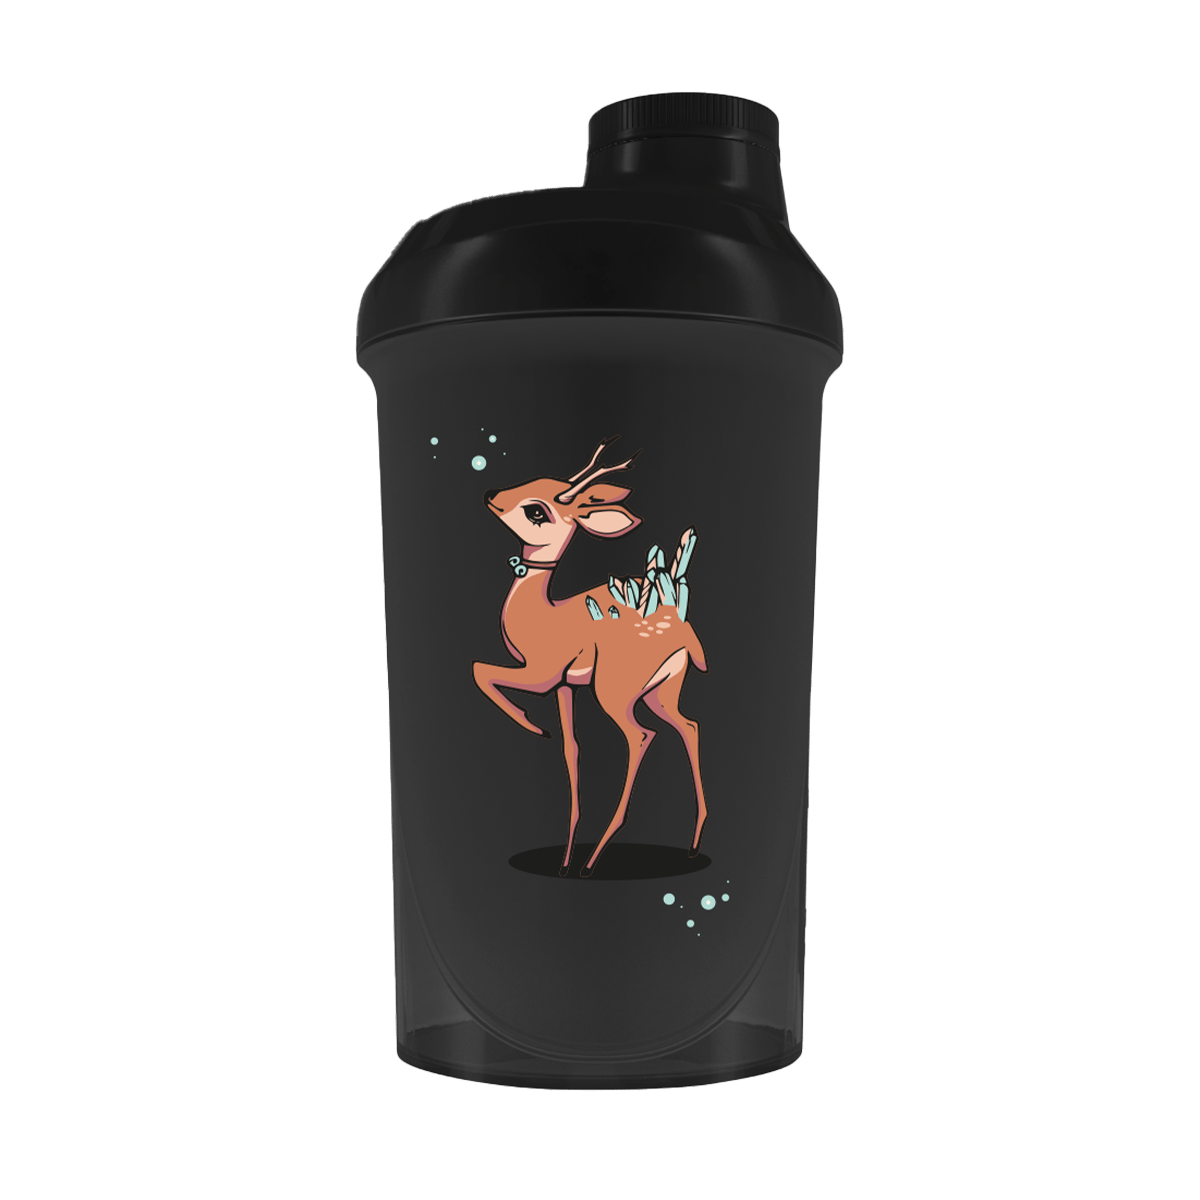 Just Legends Premium Shaker "Reindeer" | Funktionaler, veganer Shaker auf Pulverbasis ohne Zucker, mit wenig Kalorien, vielen Vitaminen und natürlichen Aromen.